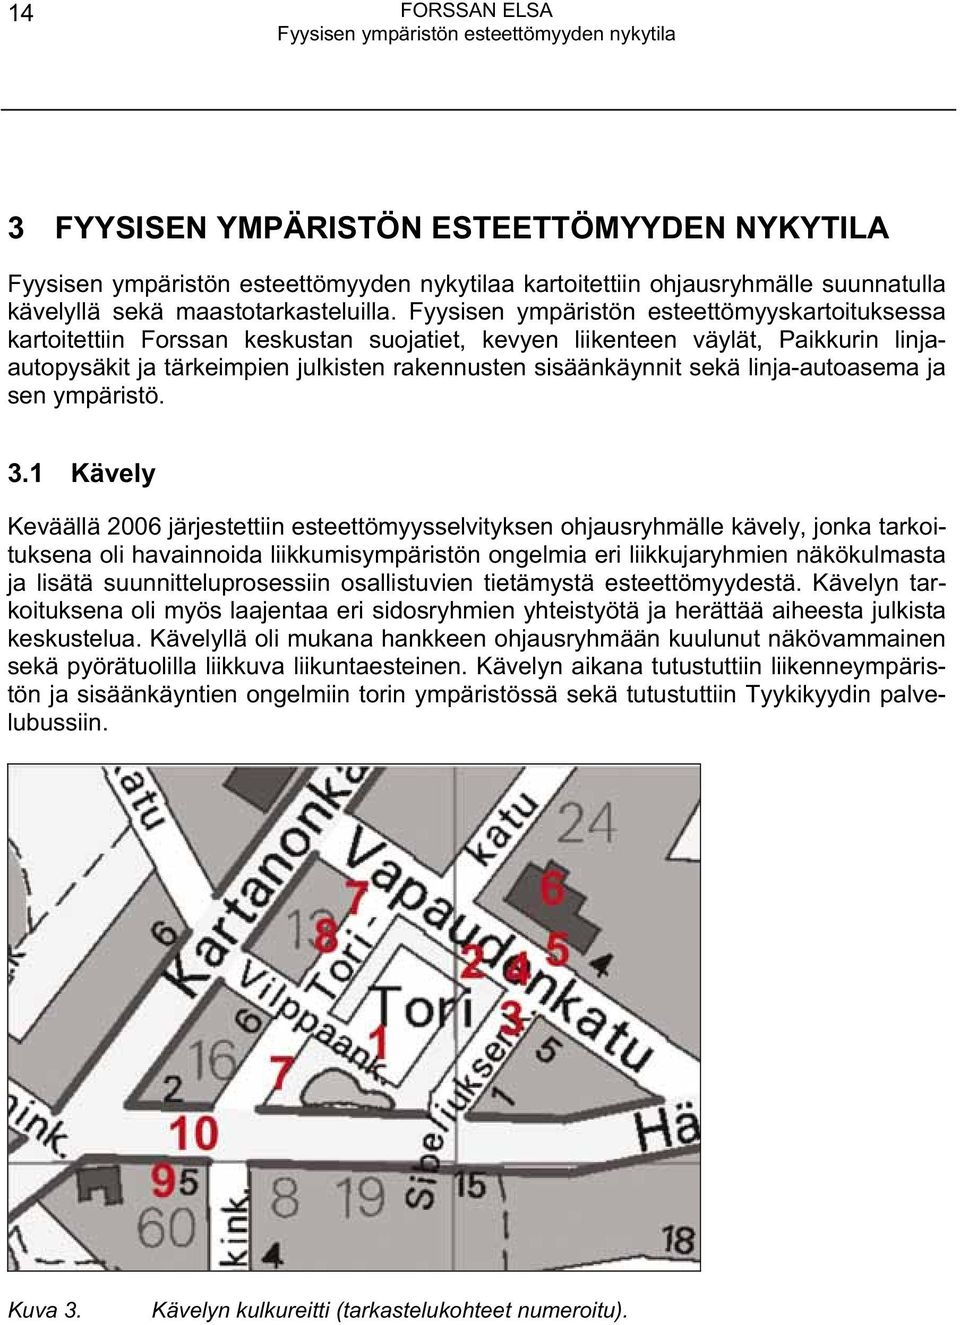 Fyysisen ympäristön esteettömyyskartoituksessa kartoitettiin Forssan keskustan suojatiet, kevyen liikenteen väylät, Paikkurin linjaautopysäkit ja tärkeimpien julkisten rakennusten sisäänkäynnit sekä